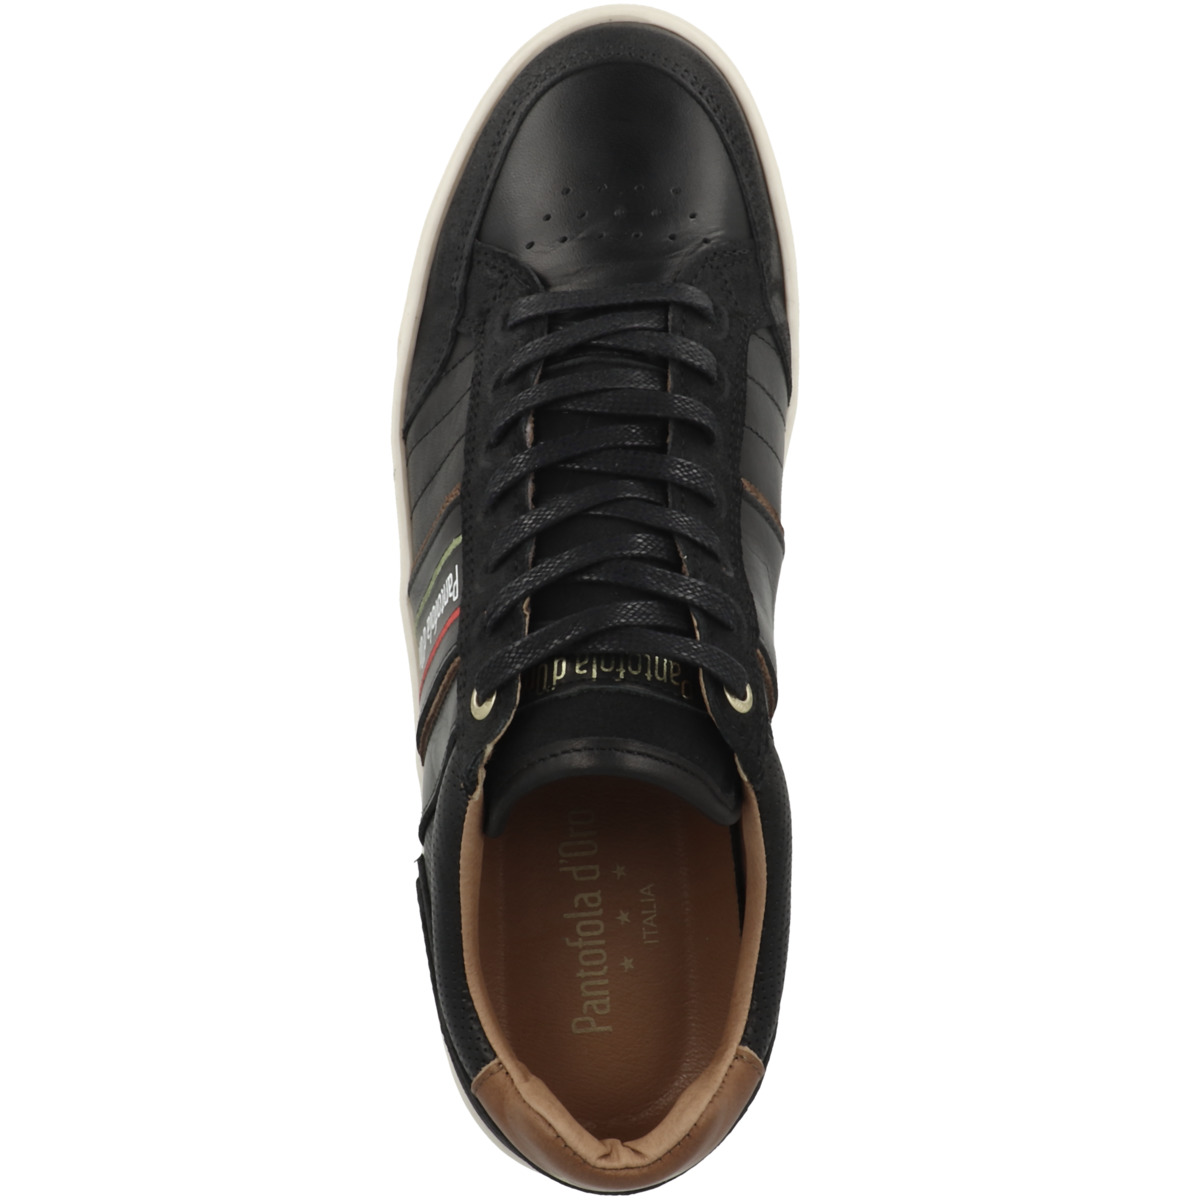 Pantofola d'Oro Laceno Uomo Low Sneaker low